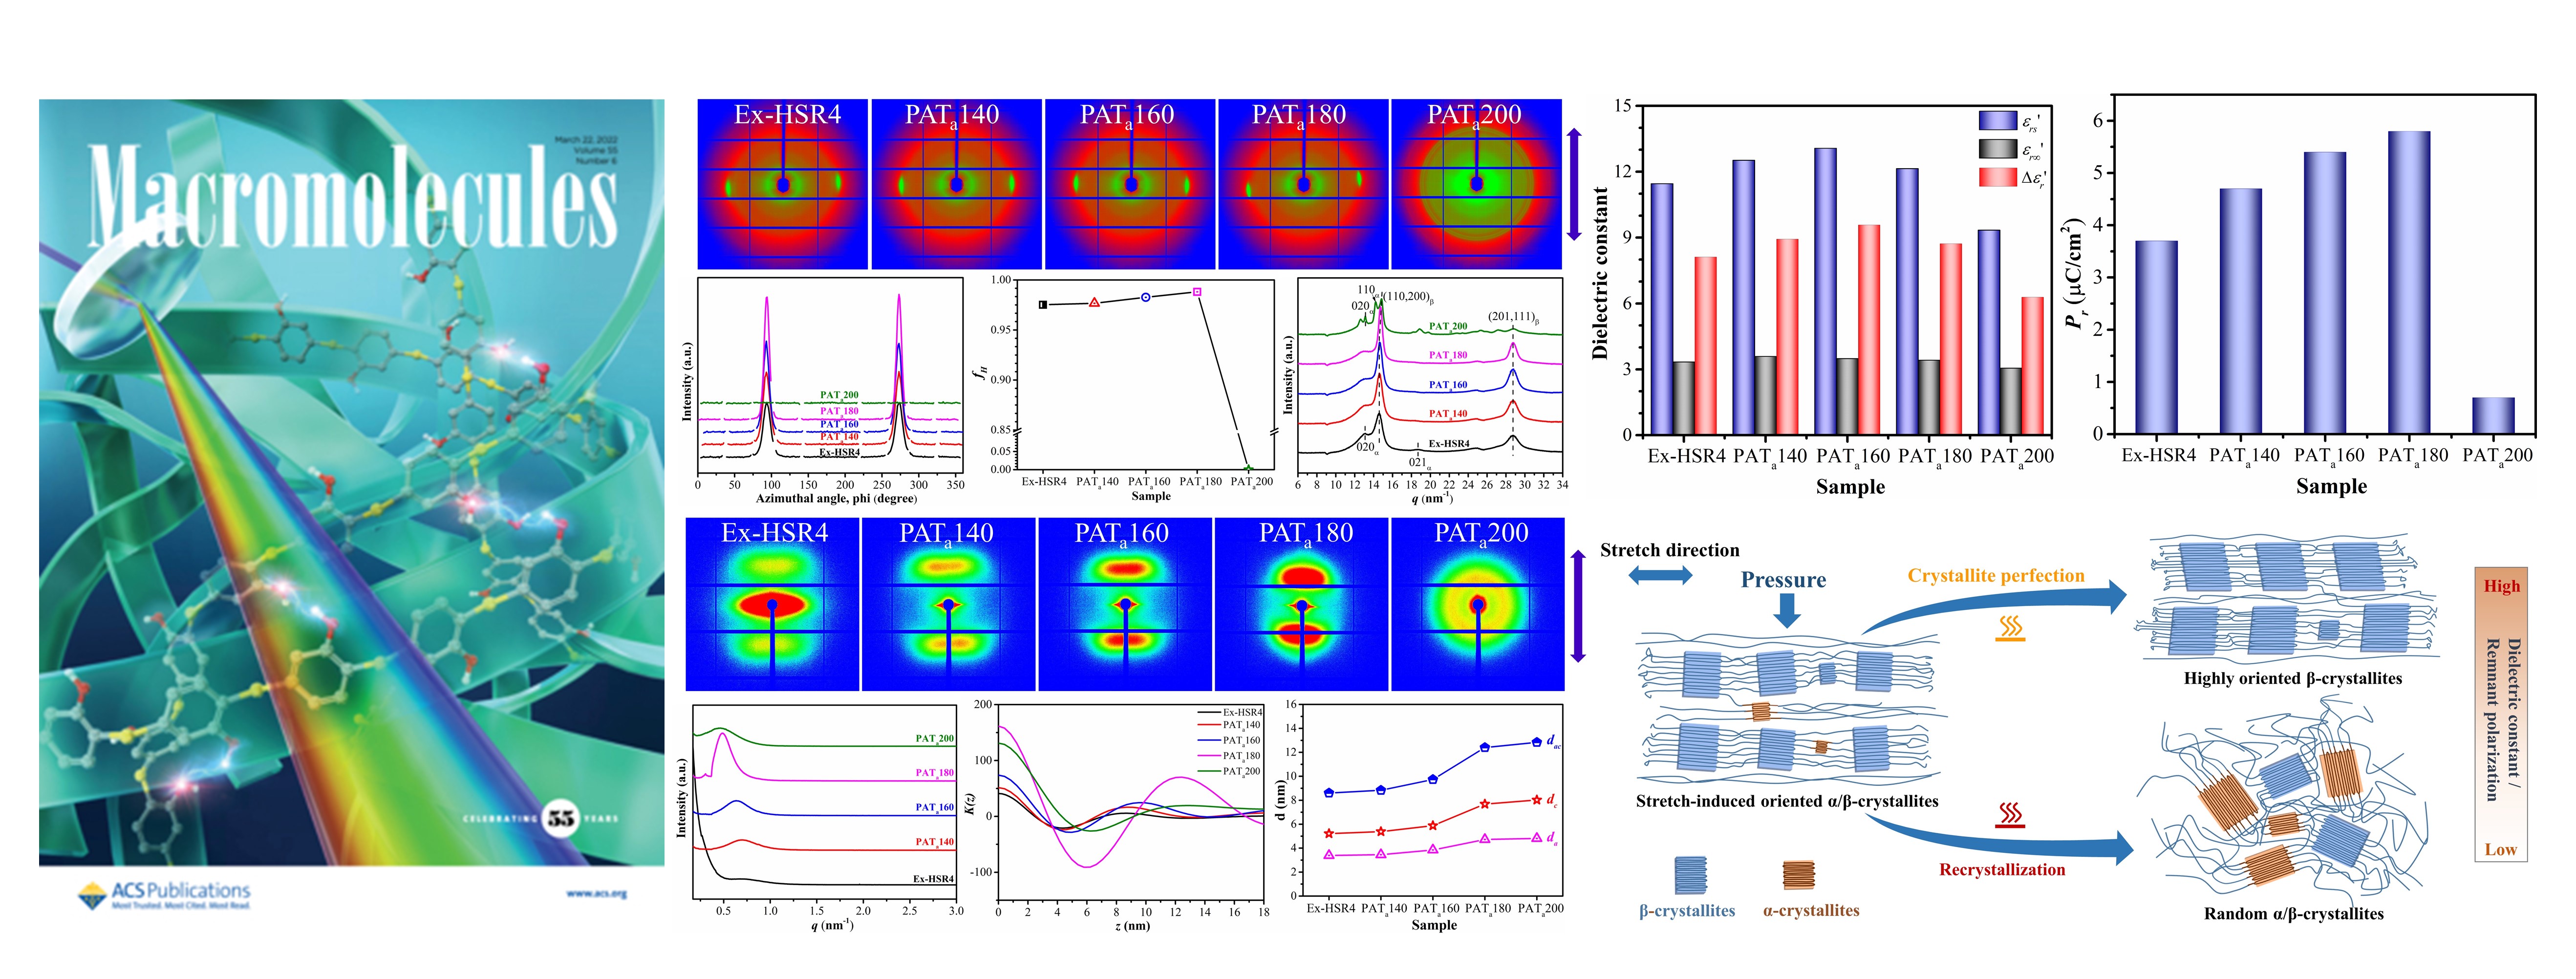 high-pressure annealing of oriented PVDF films improves their properties published in Macromolecules